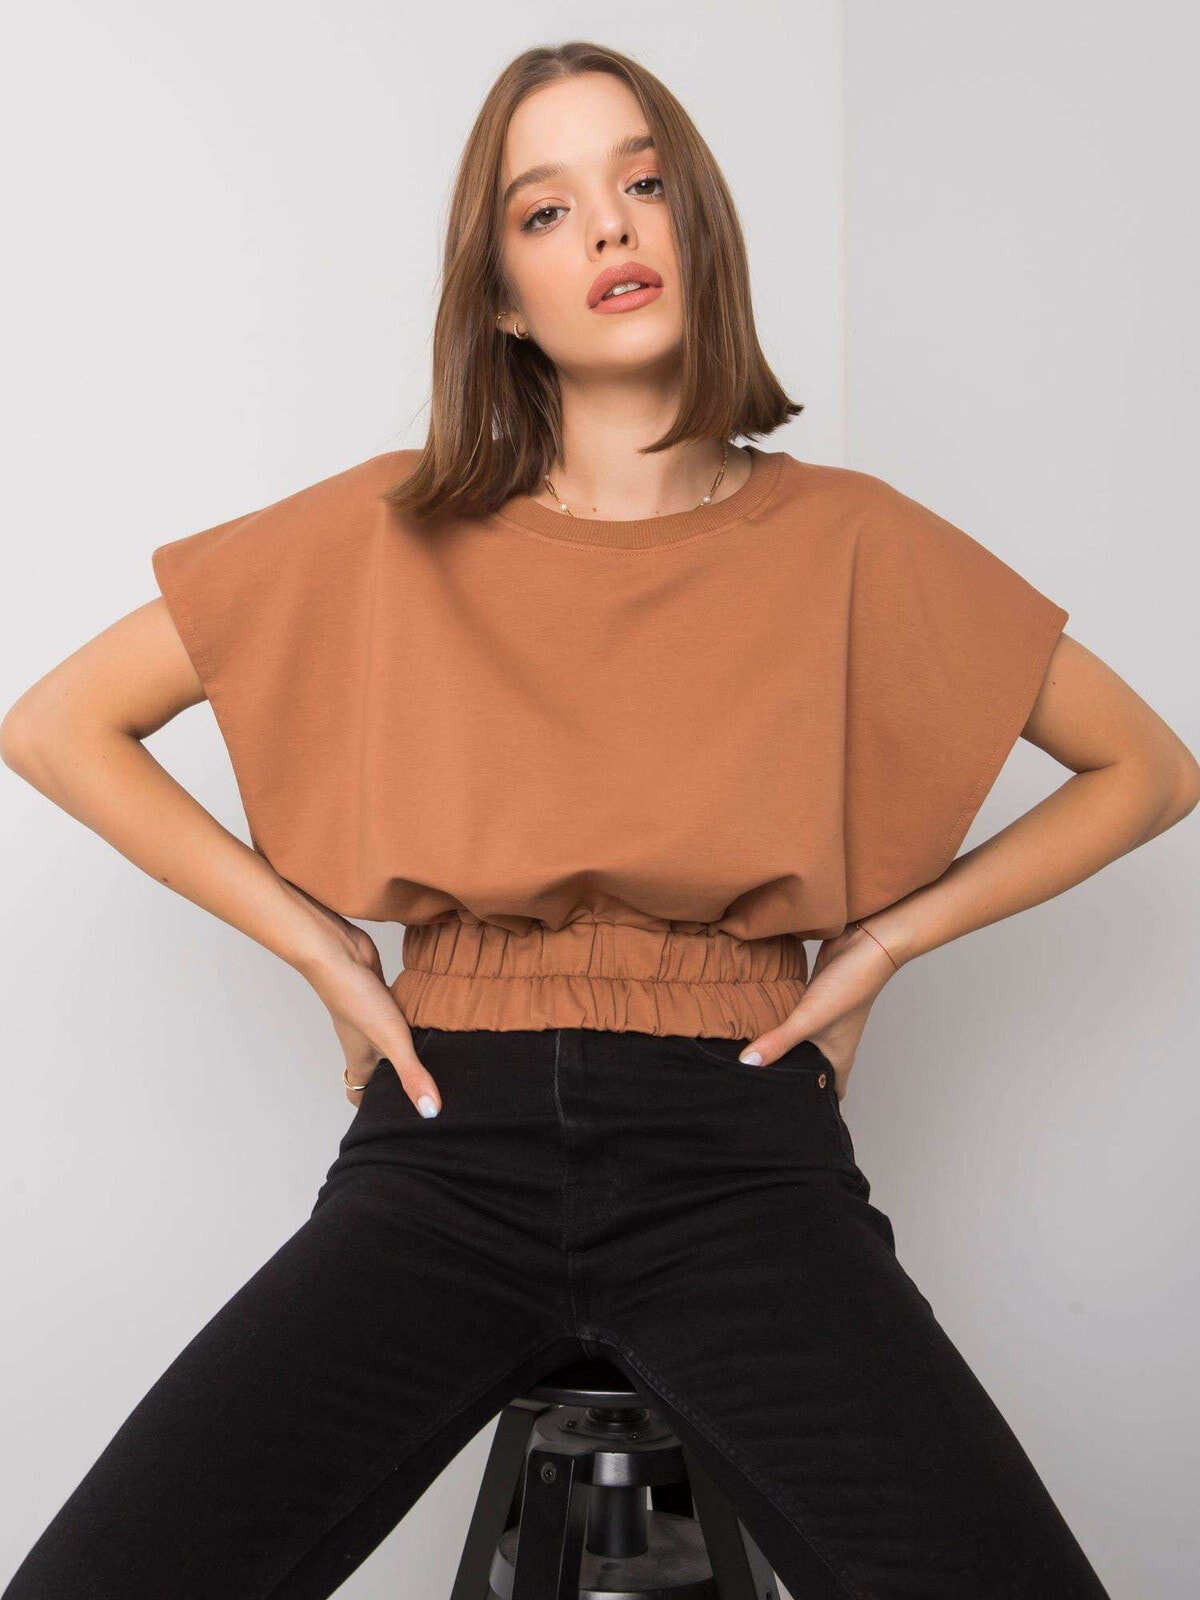 Женская укороченная блузка с коротким рукавом фуксия Factory Price